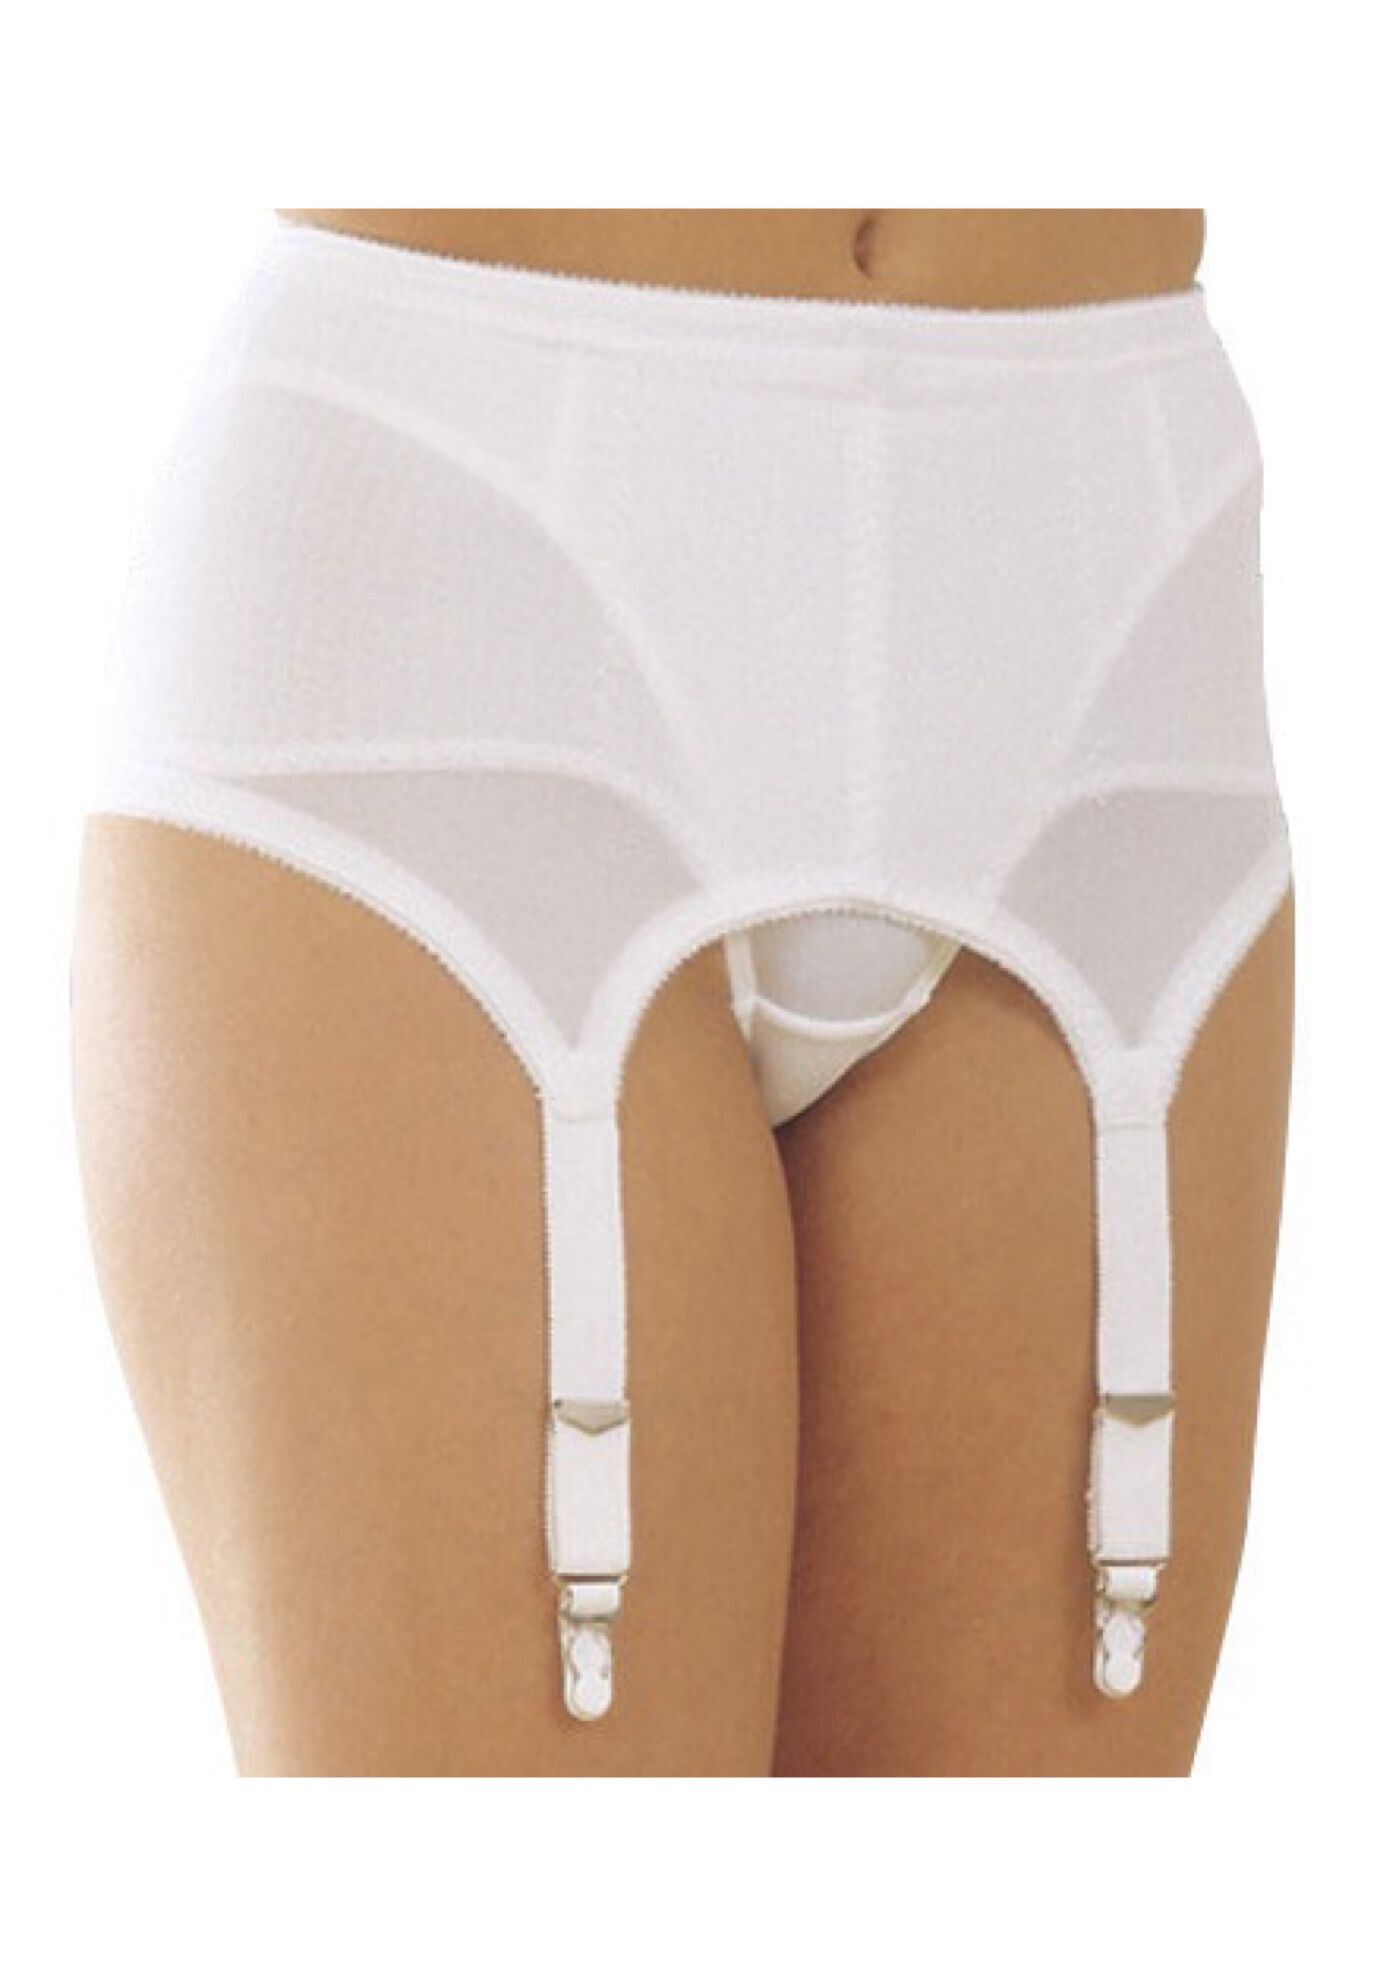 Plus Size Women's 6-Strap Garter Belt by Rago in White (Size 6X)